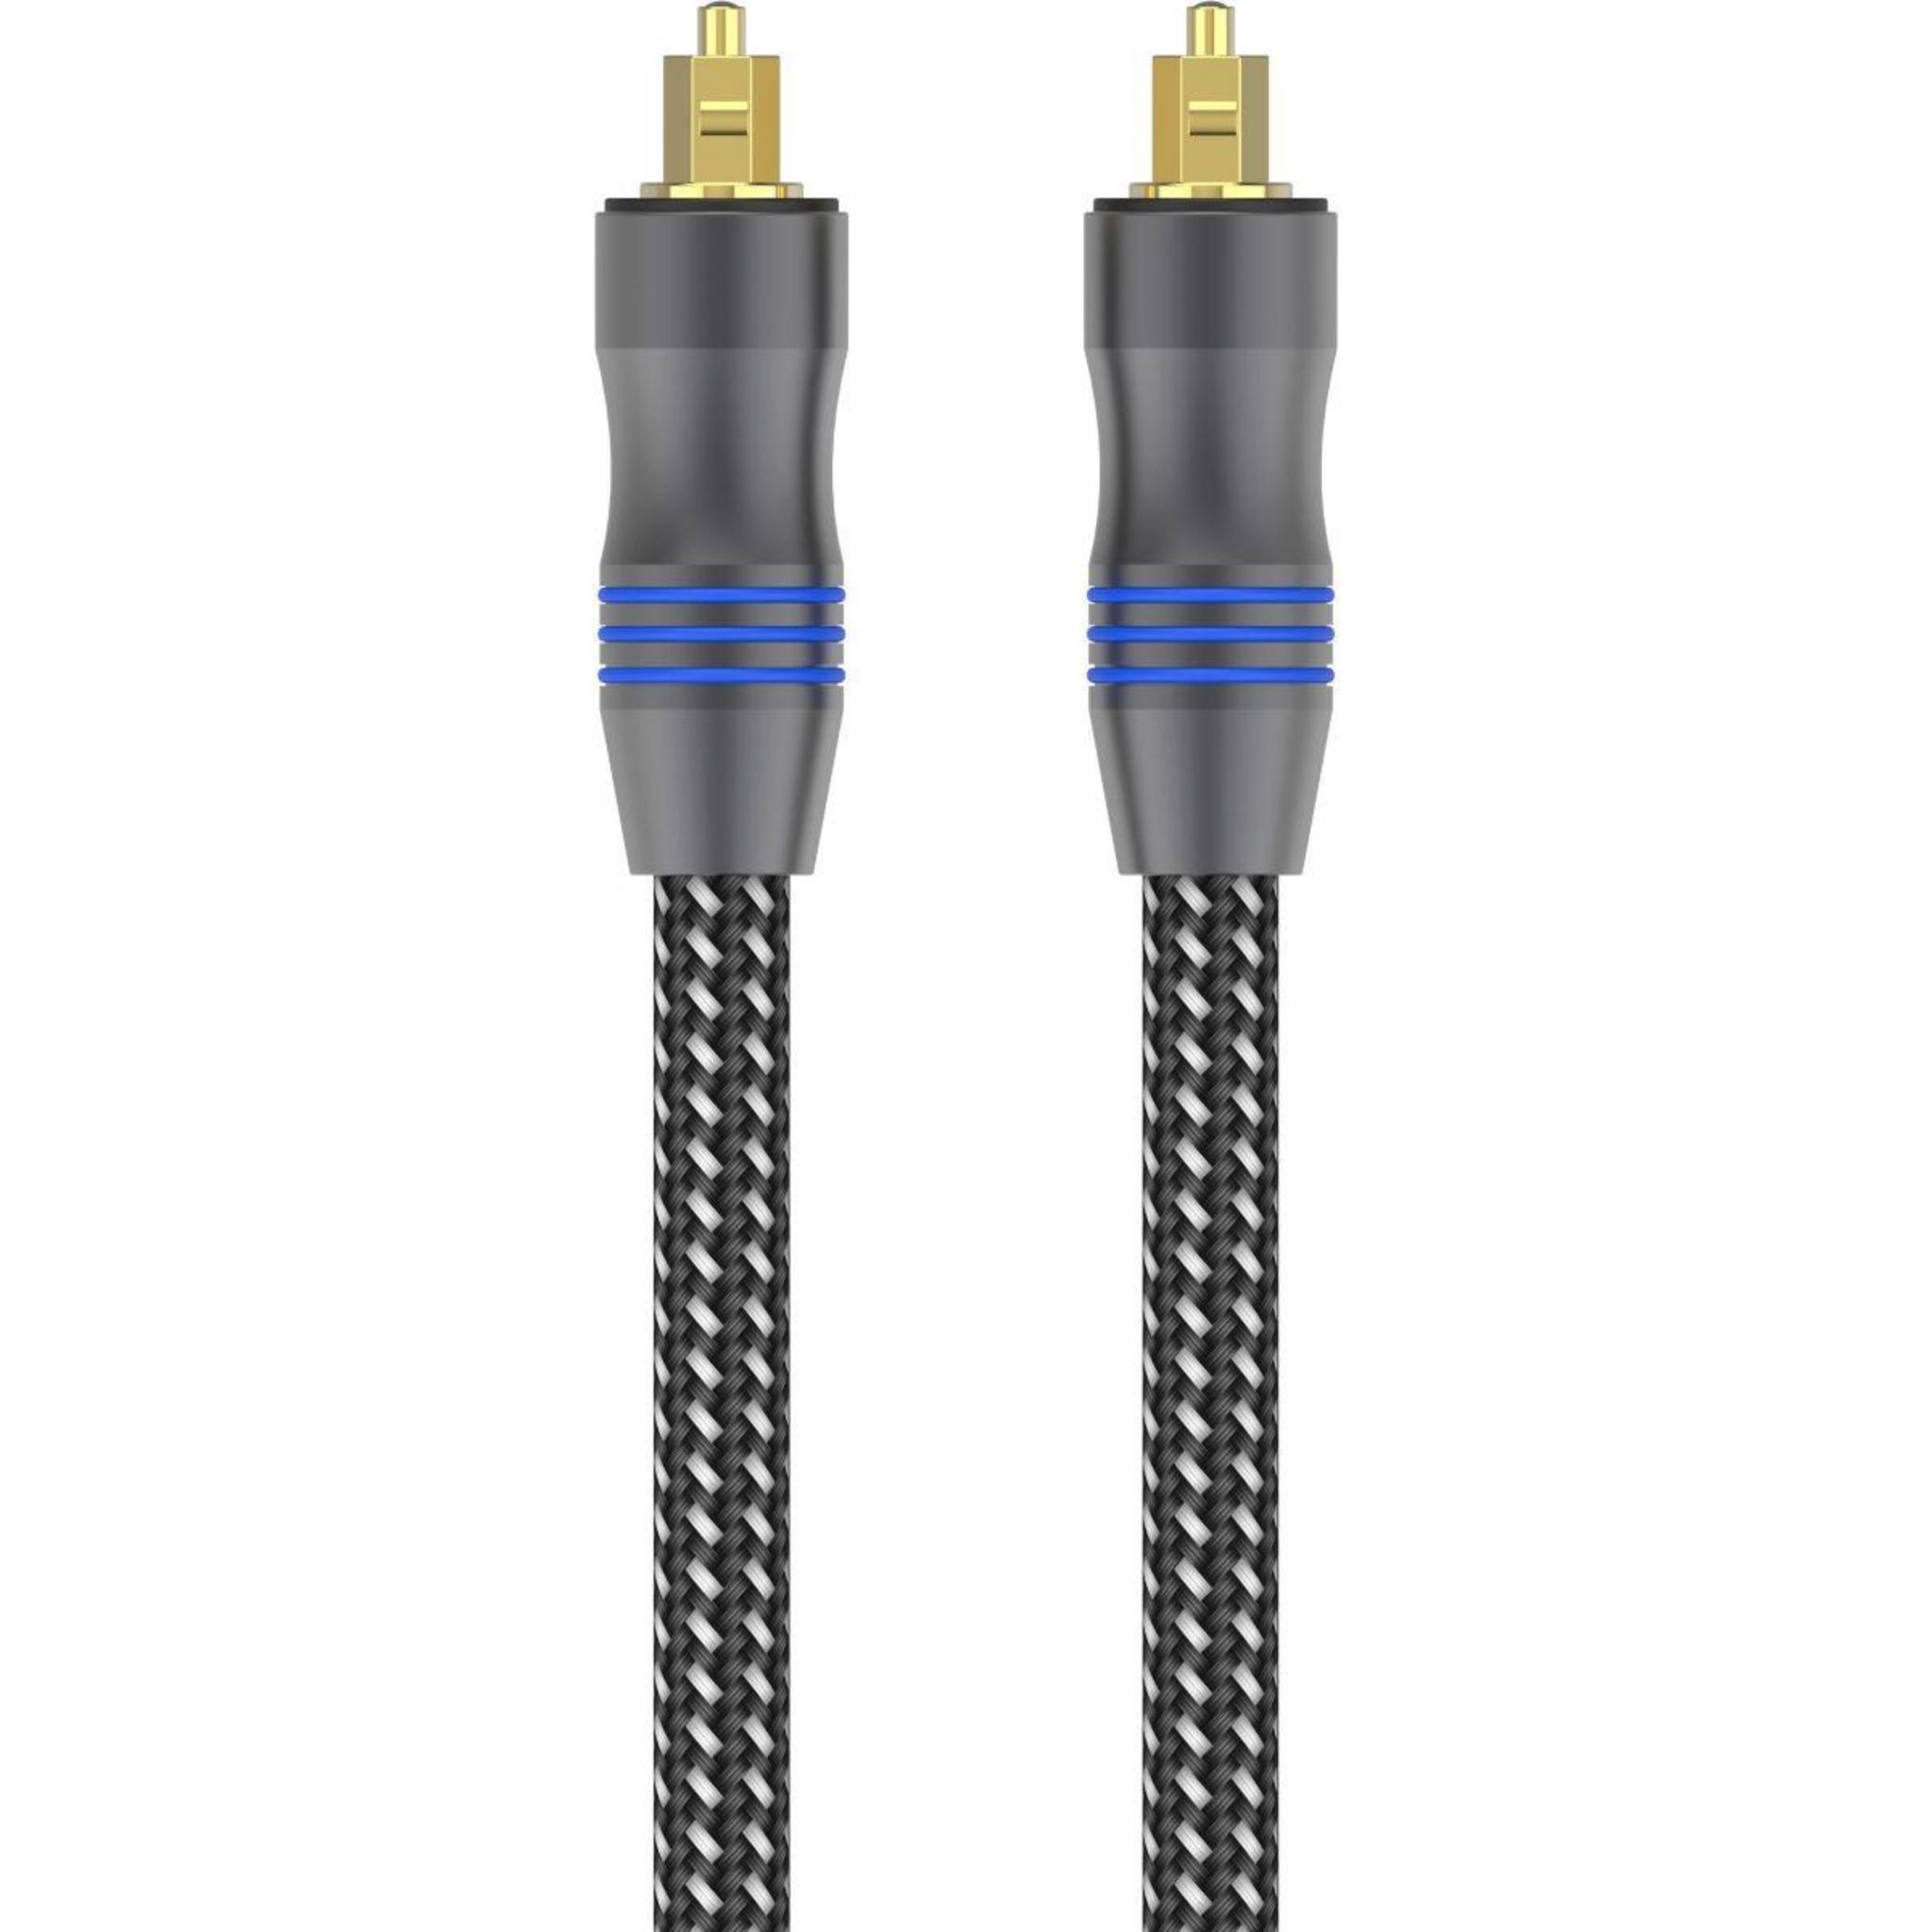 Câble audio à fibre optique Hama ODT (Toslink) mâle 1.5M